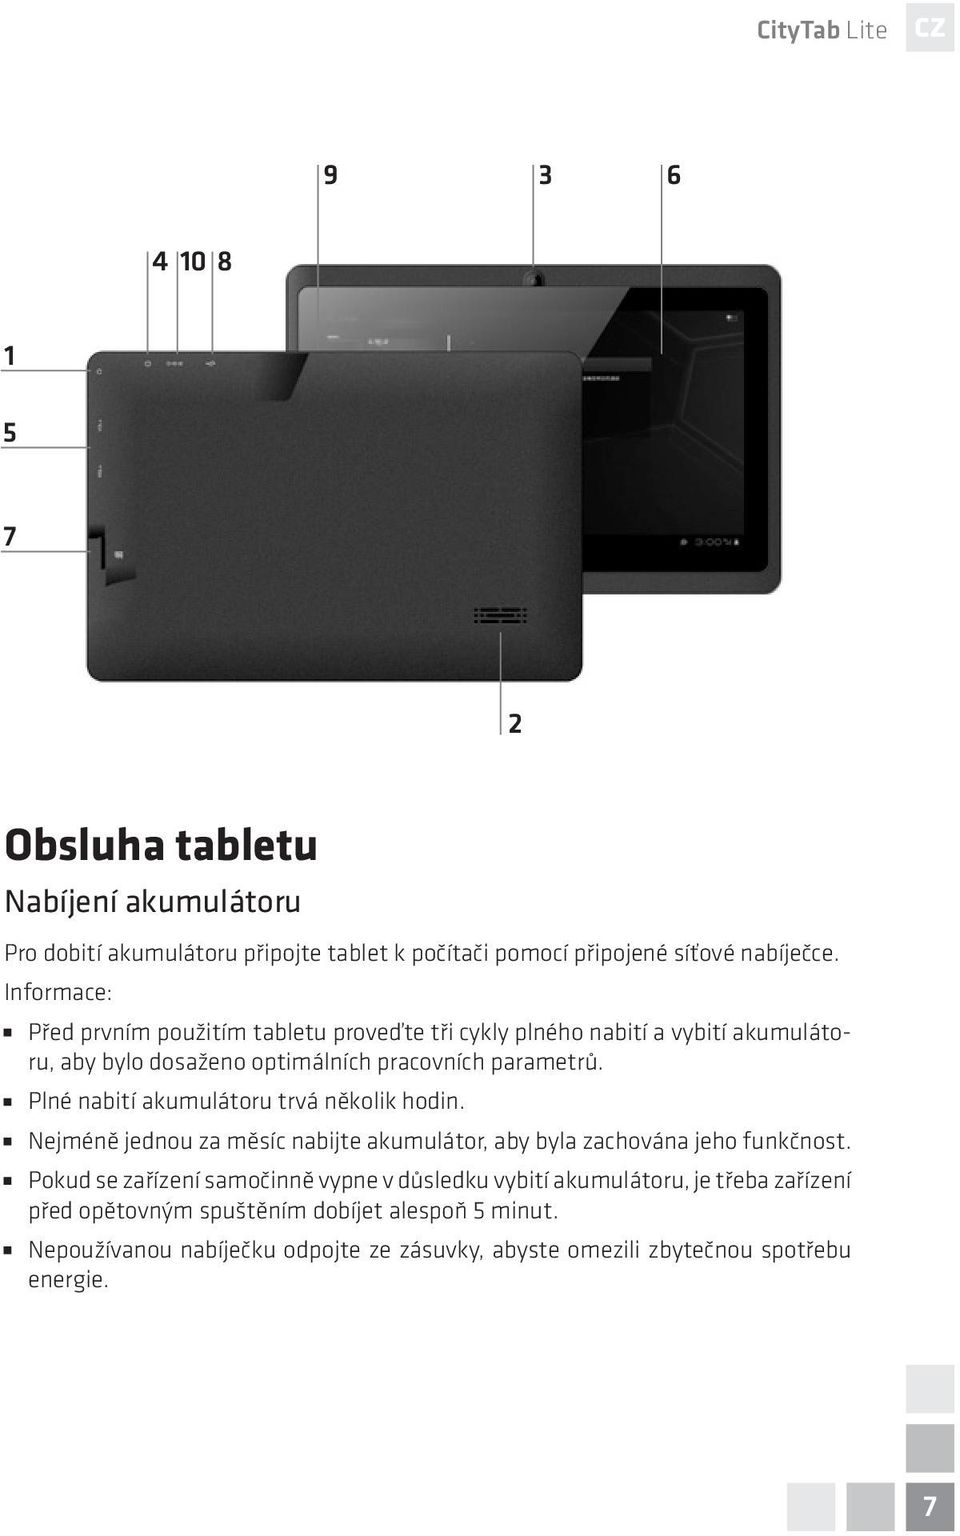 CityTab Lite. Tablet Colorovo. CityTab Lite 7. * funkce dostupná v  závislosti na modelu. - PDF Stažení zdarma